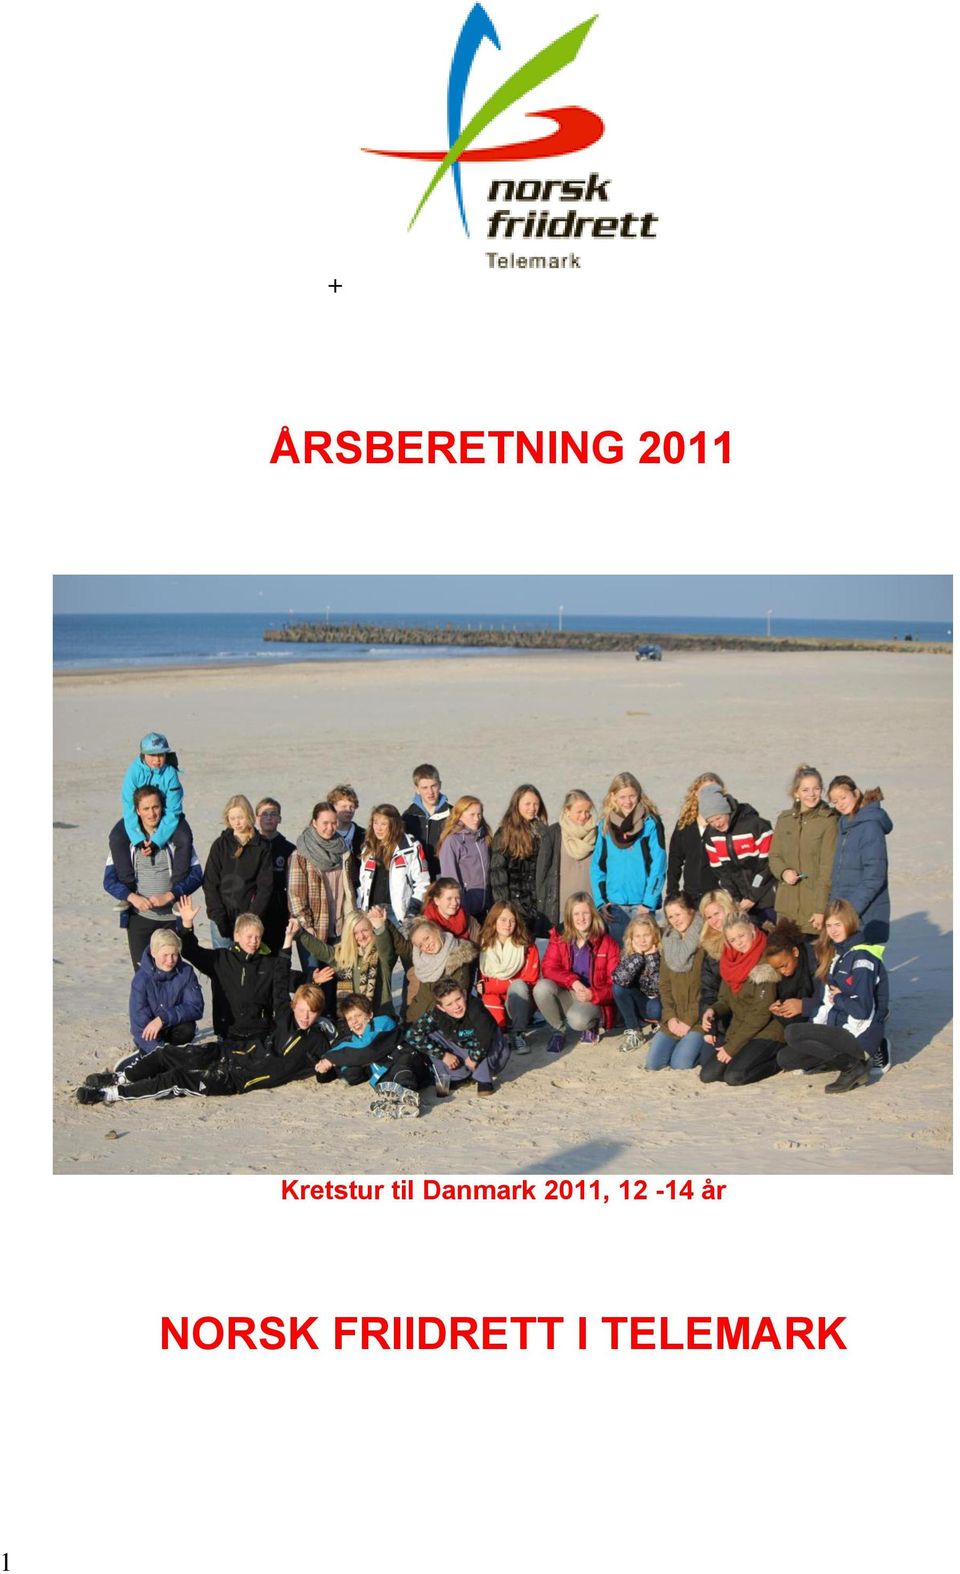 2011, 12-14 år NORSK